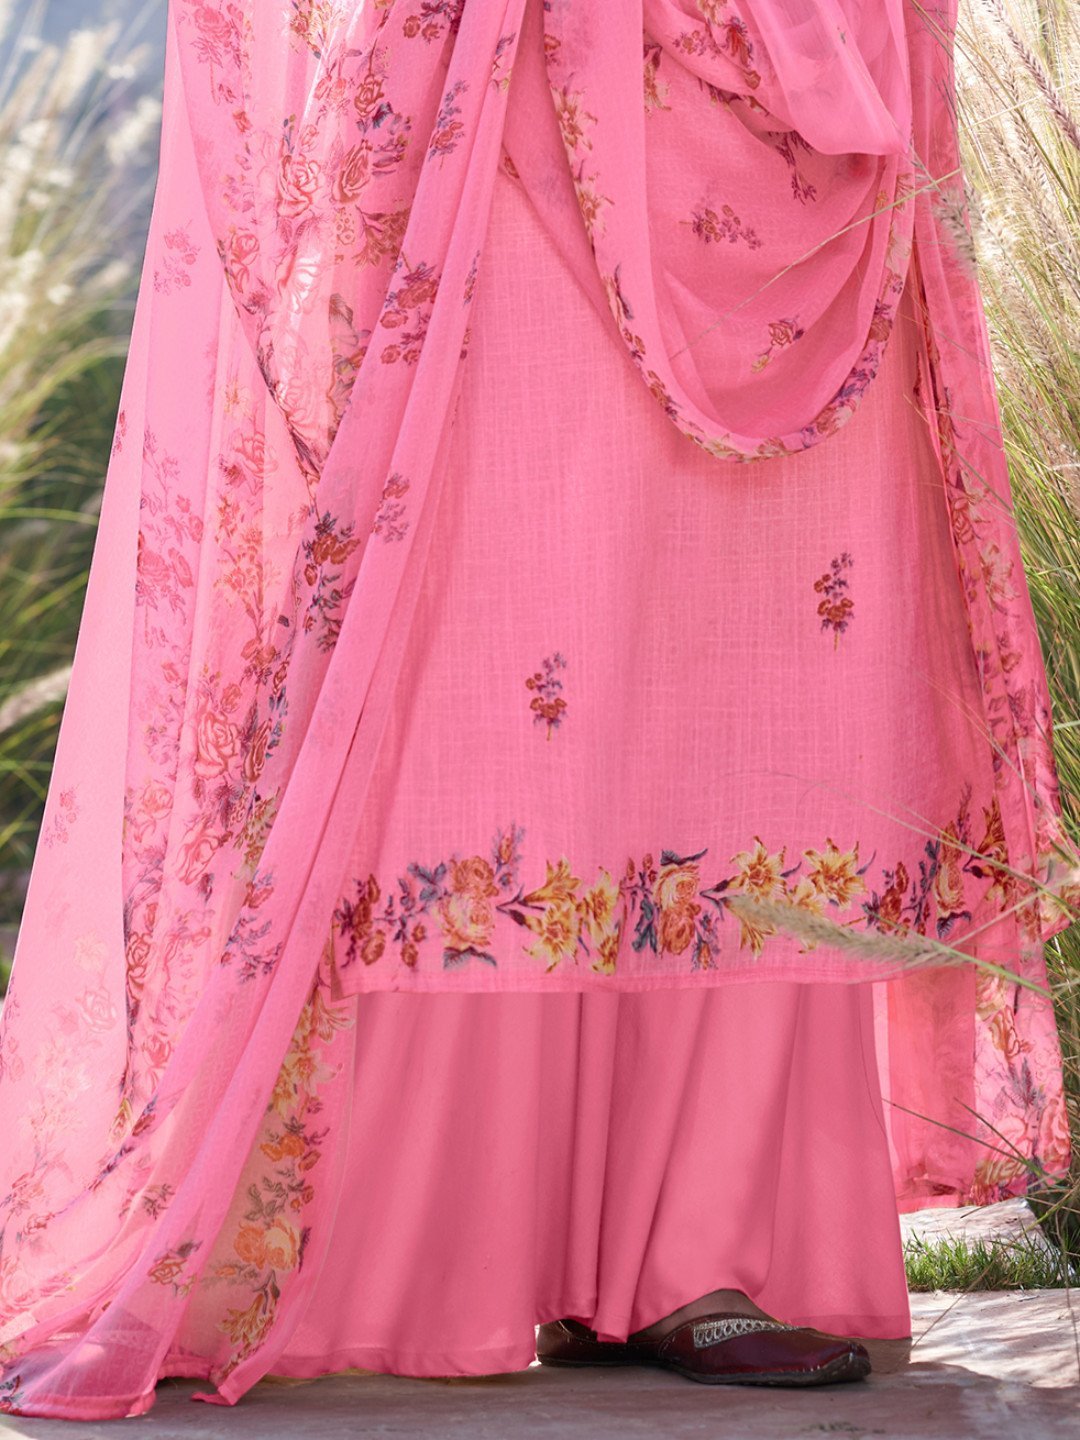 Unstitched Printed Pink Cotton Salwar Kameez Material - Stilento